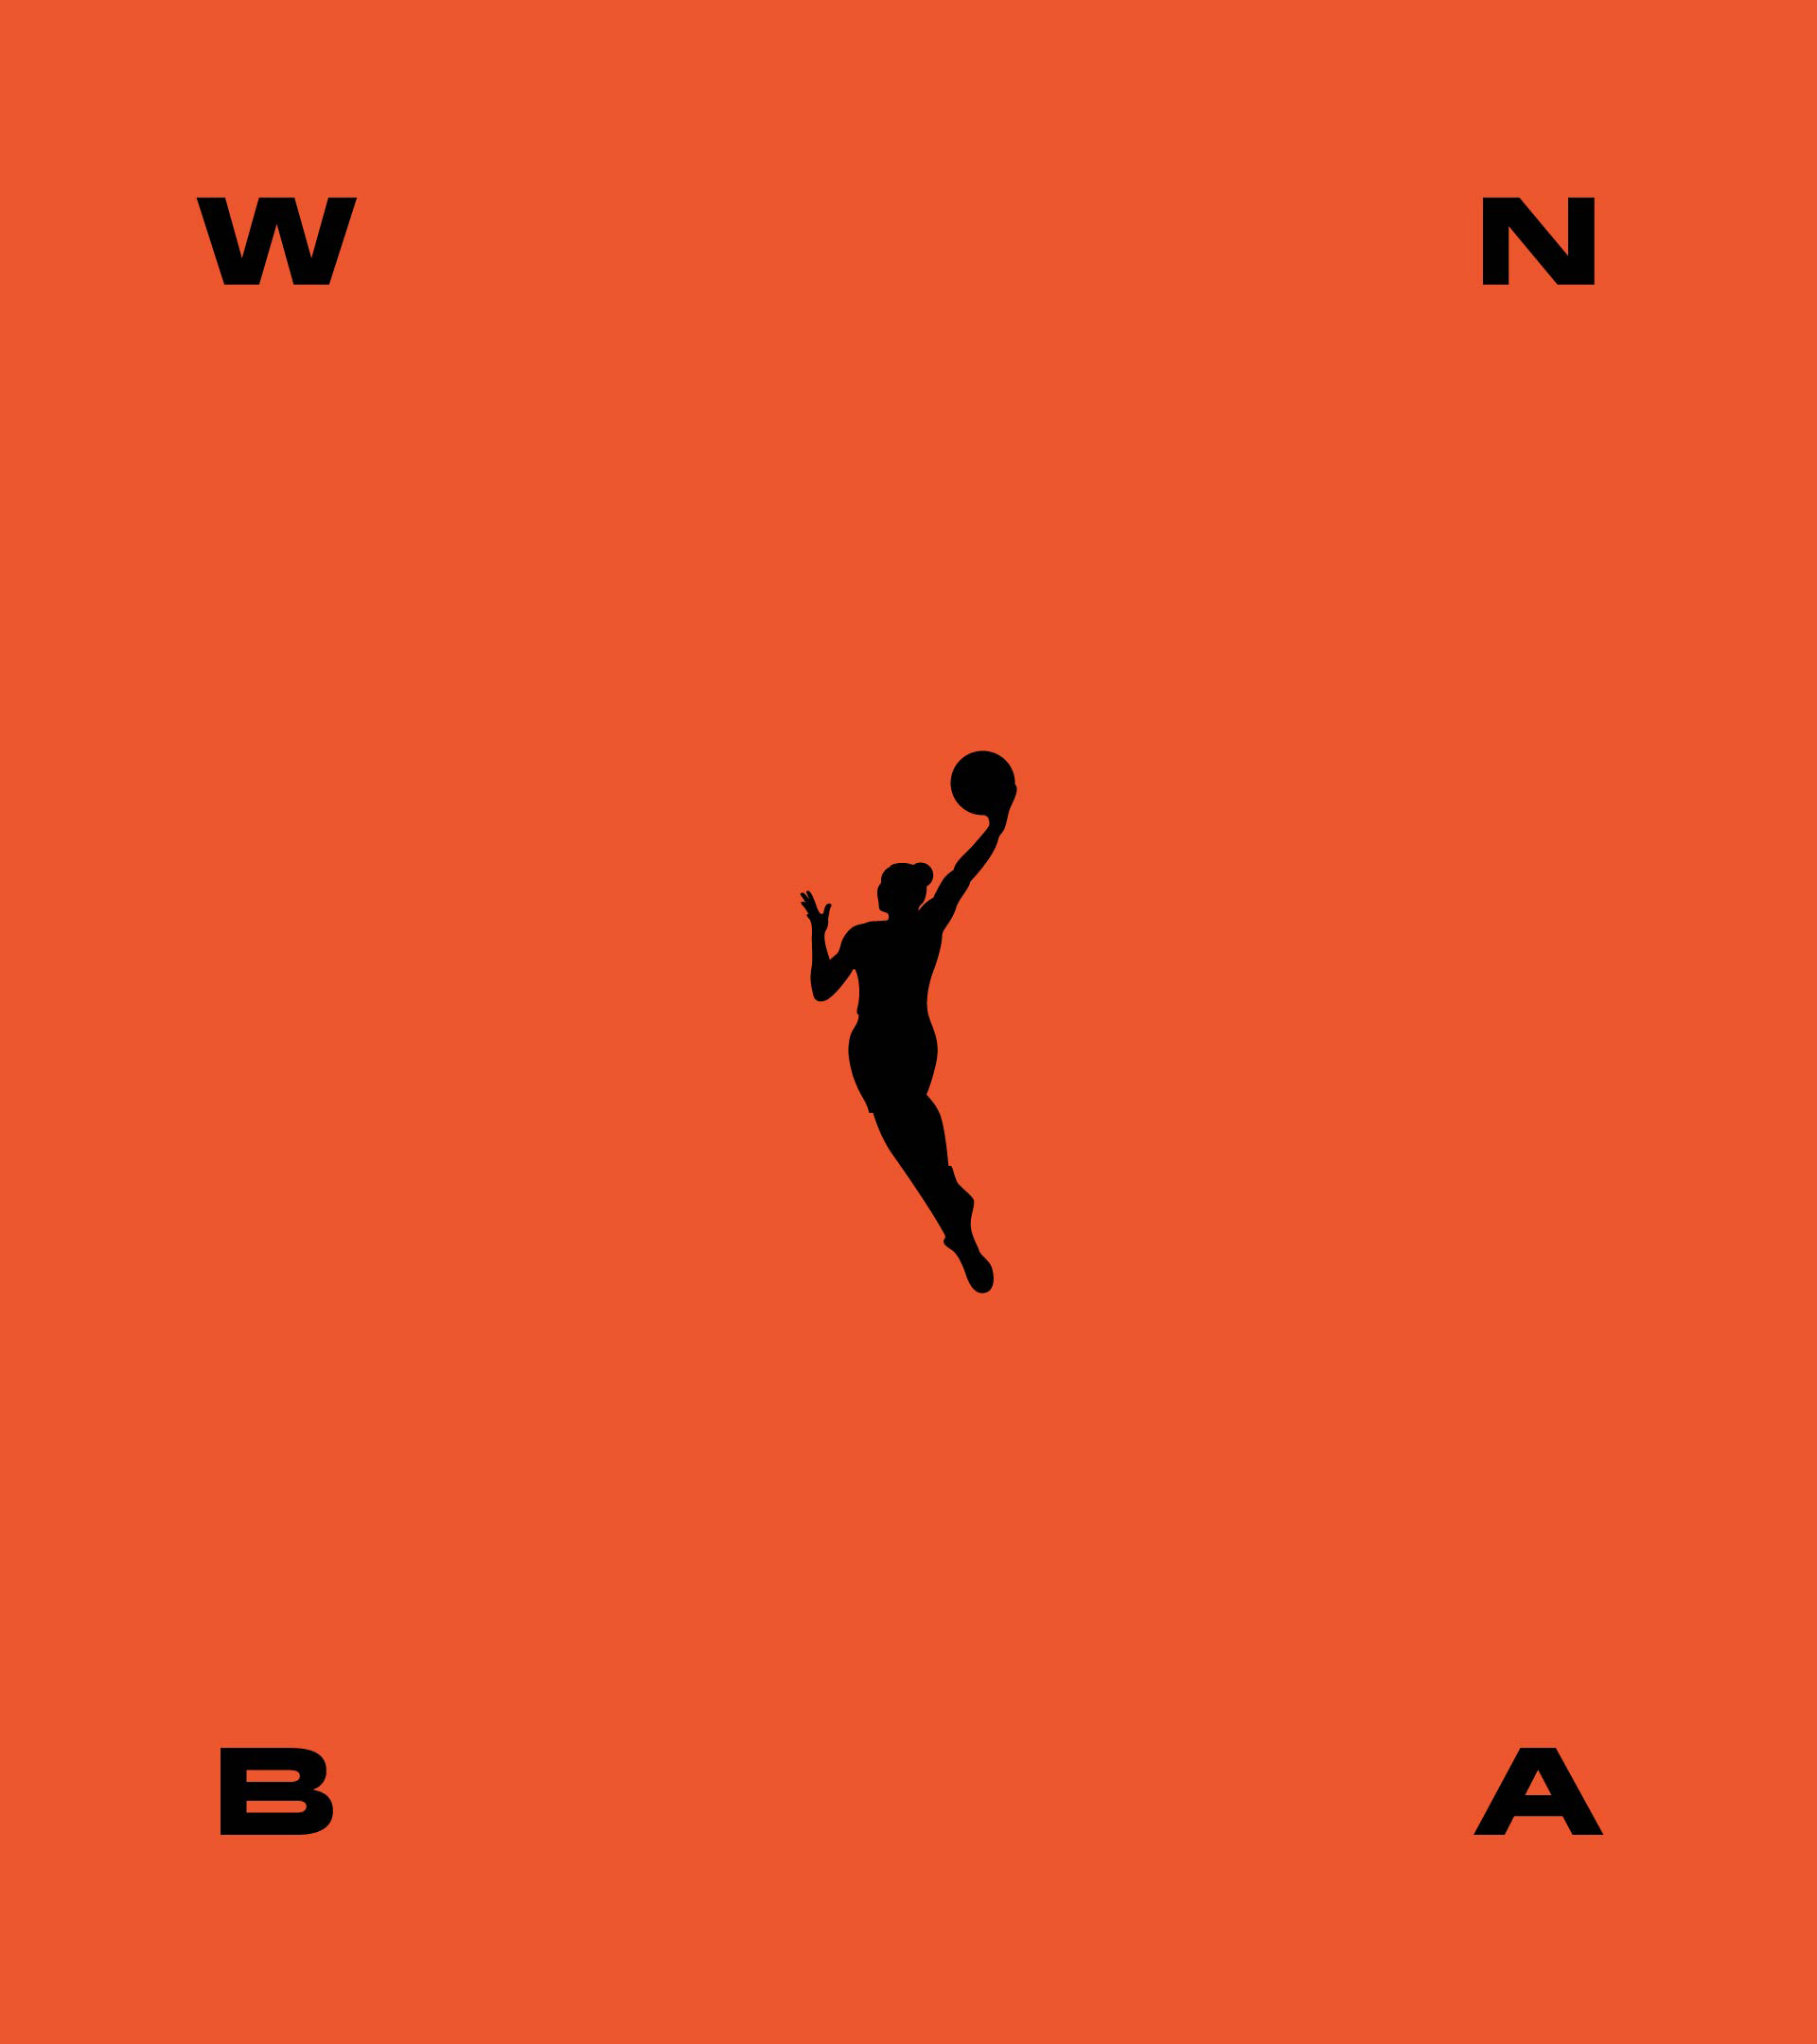 WNBA logo poster